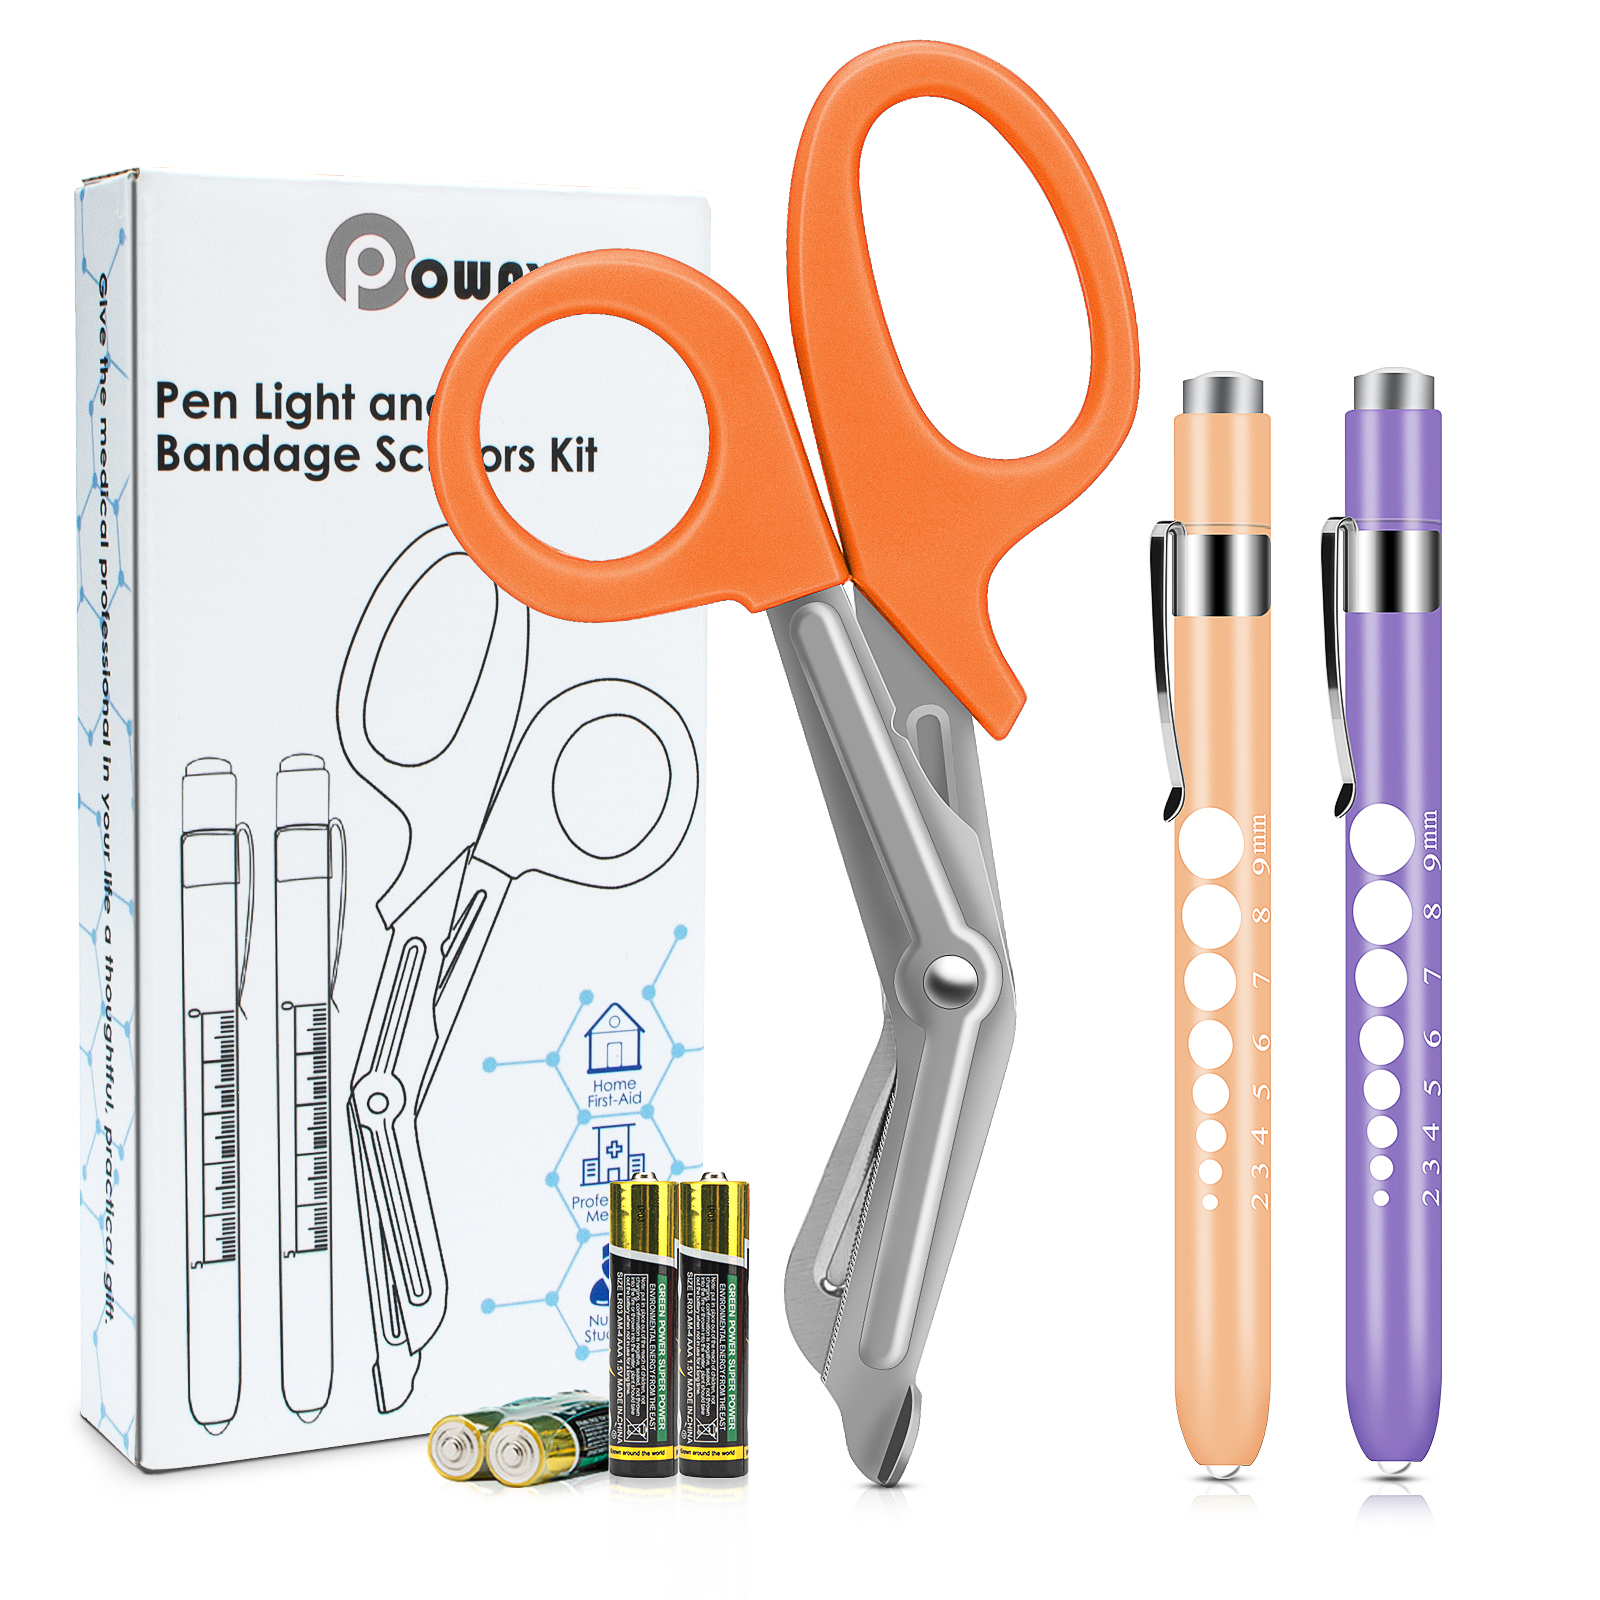 OPOWAY Medical Pen Light et Ciseaux à Bandage Orange 3 Pack, Deux lampes-stylos LED réutilisables pour élèves,  avec des piles gratuites